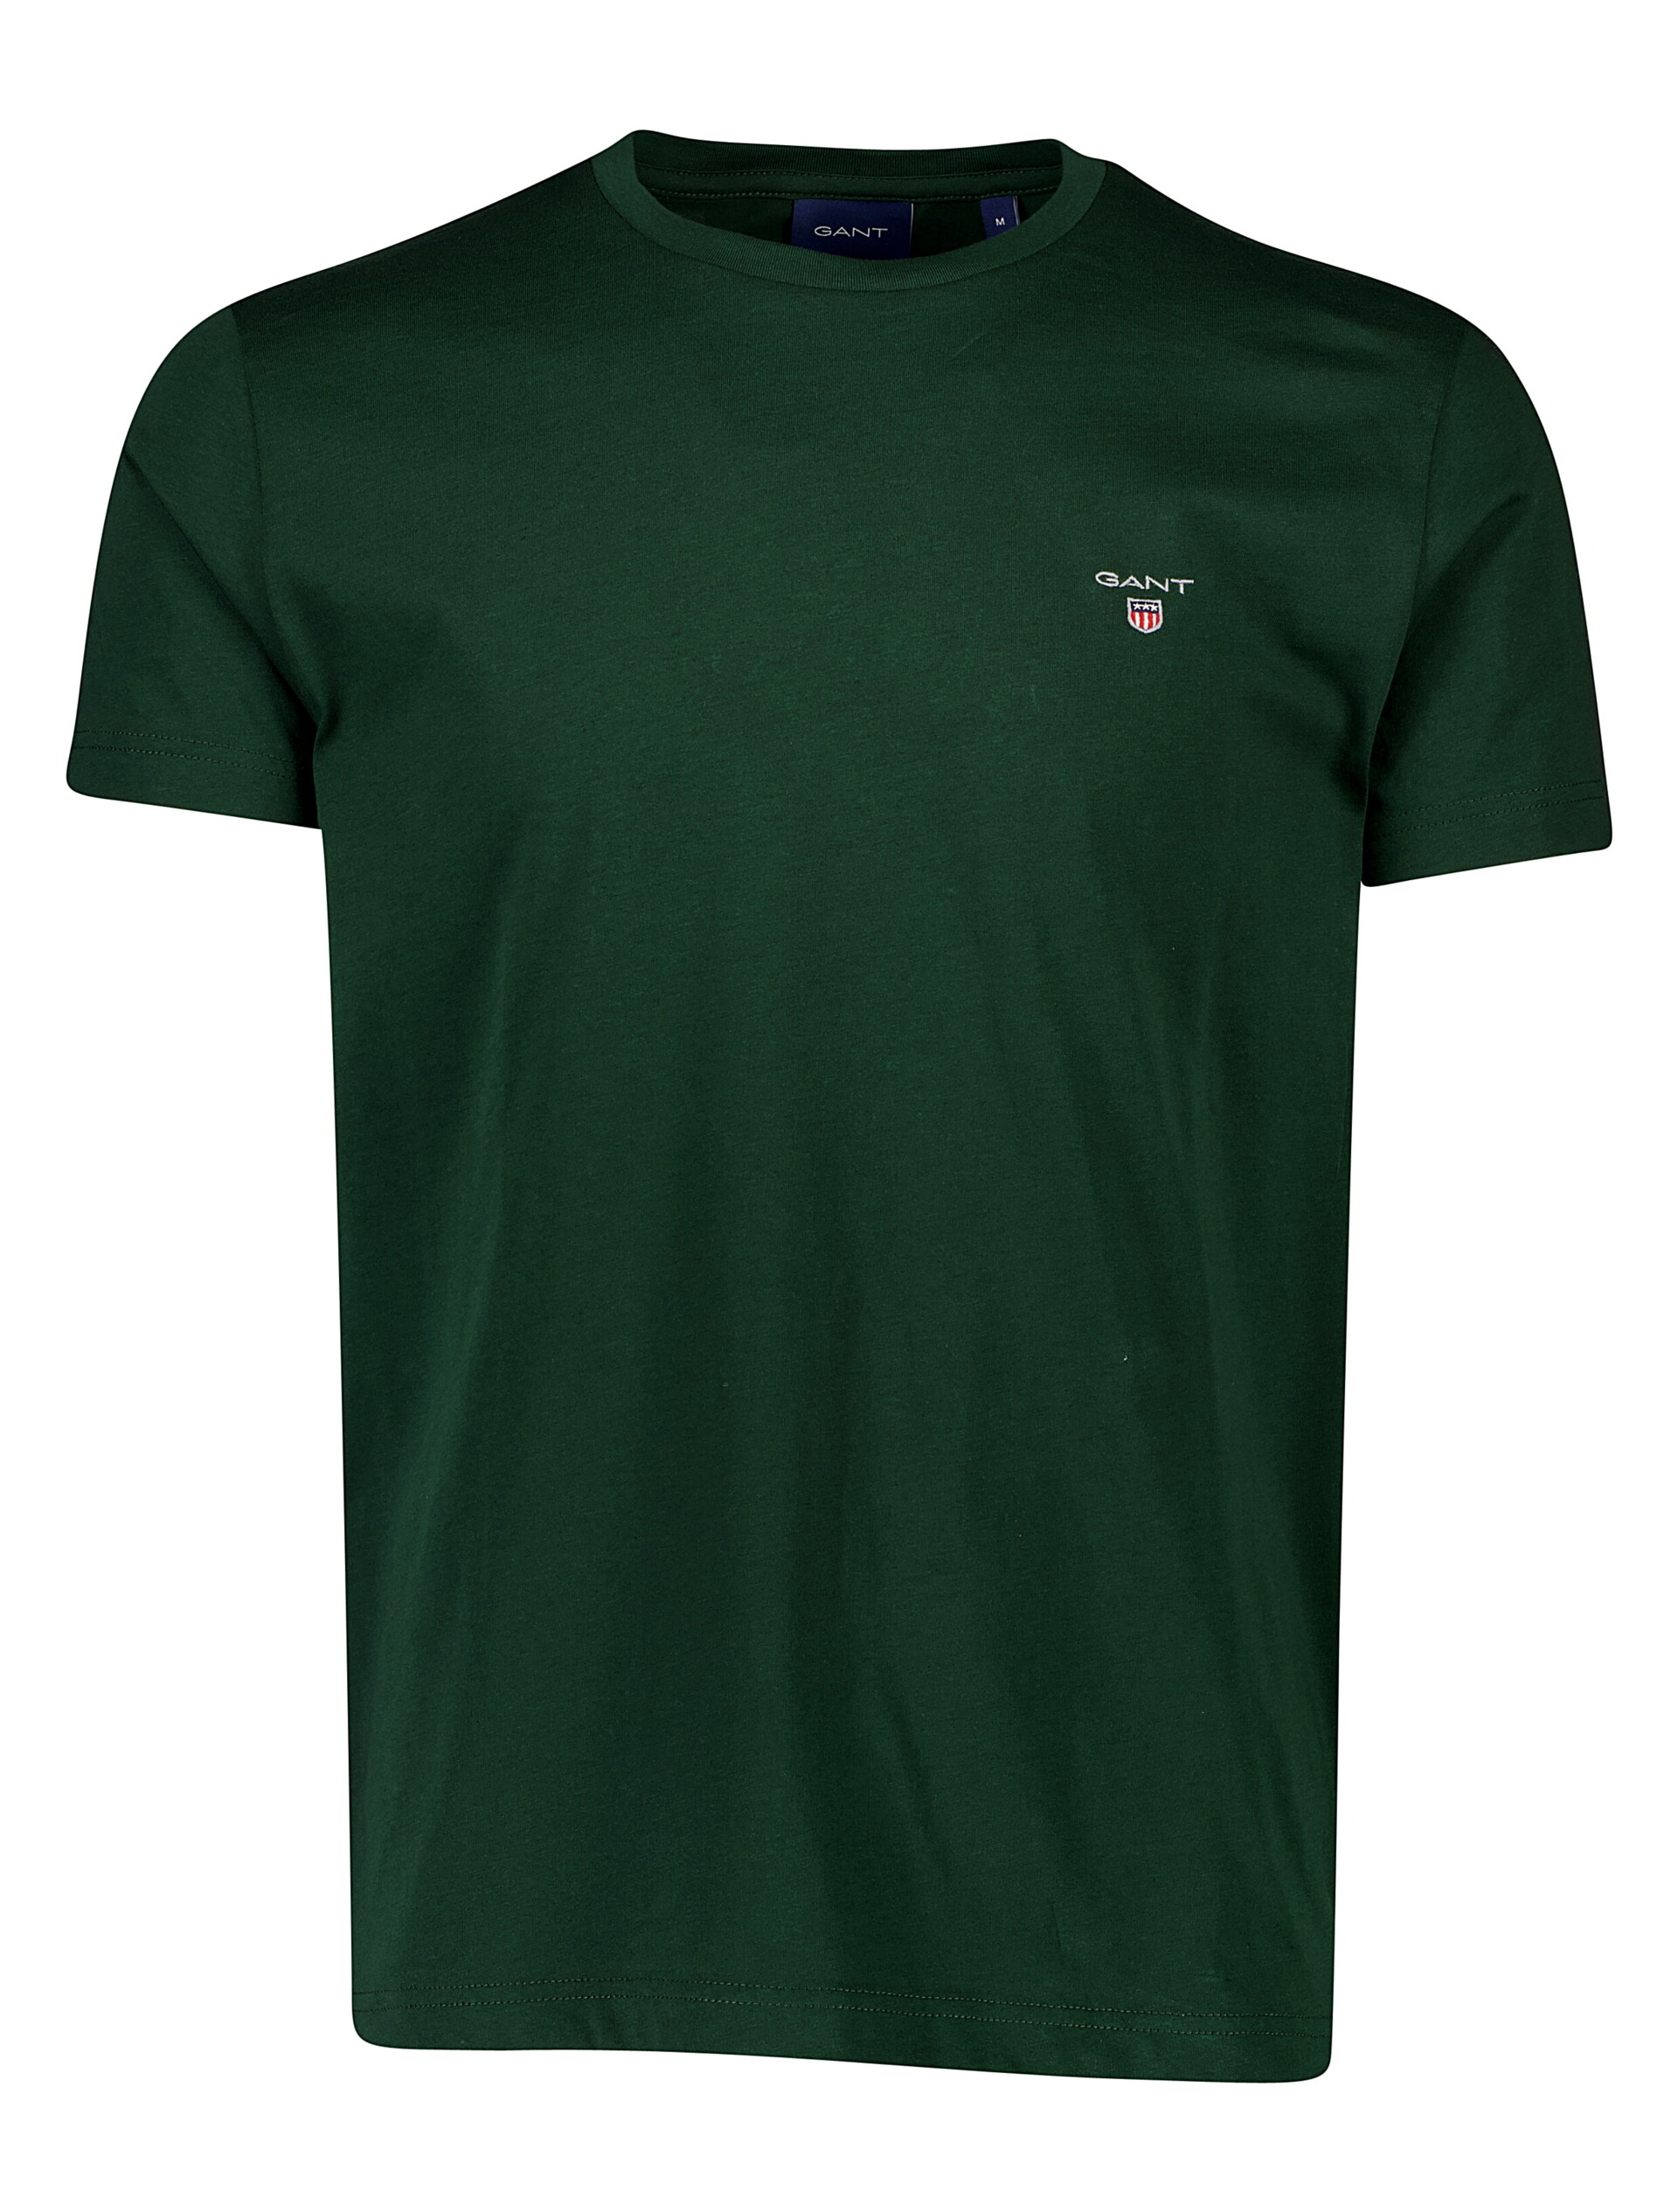 Gant T-shirt grøn / 374 green